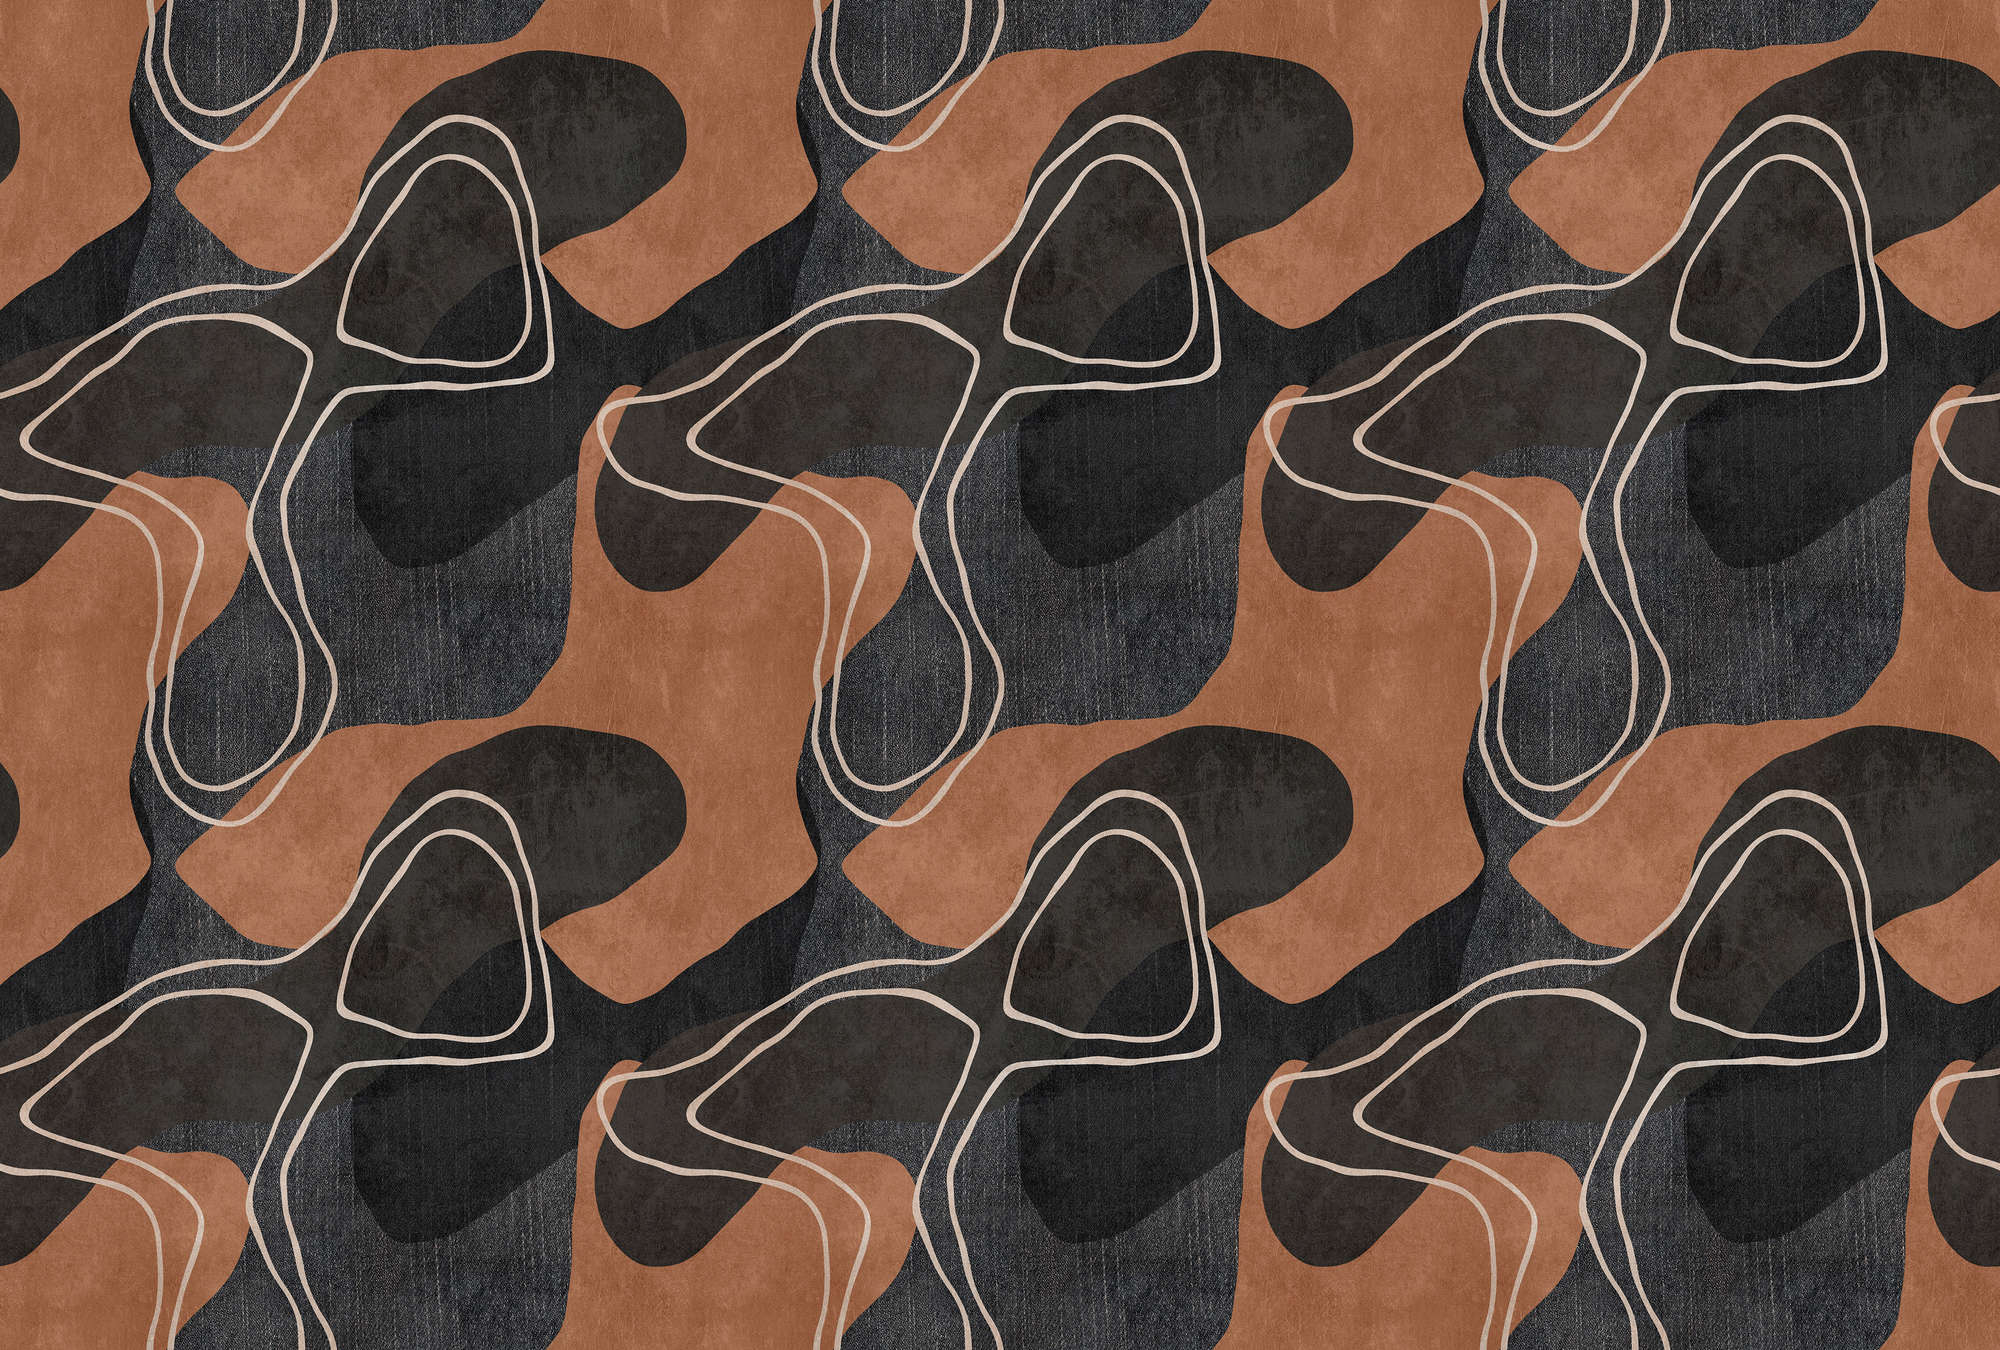             Terra 1 - Ethno behang met abstract design in aardetinten
        